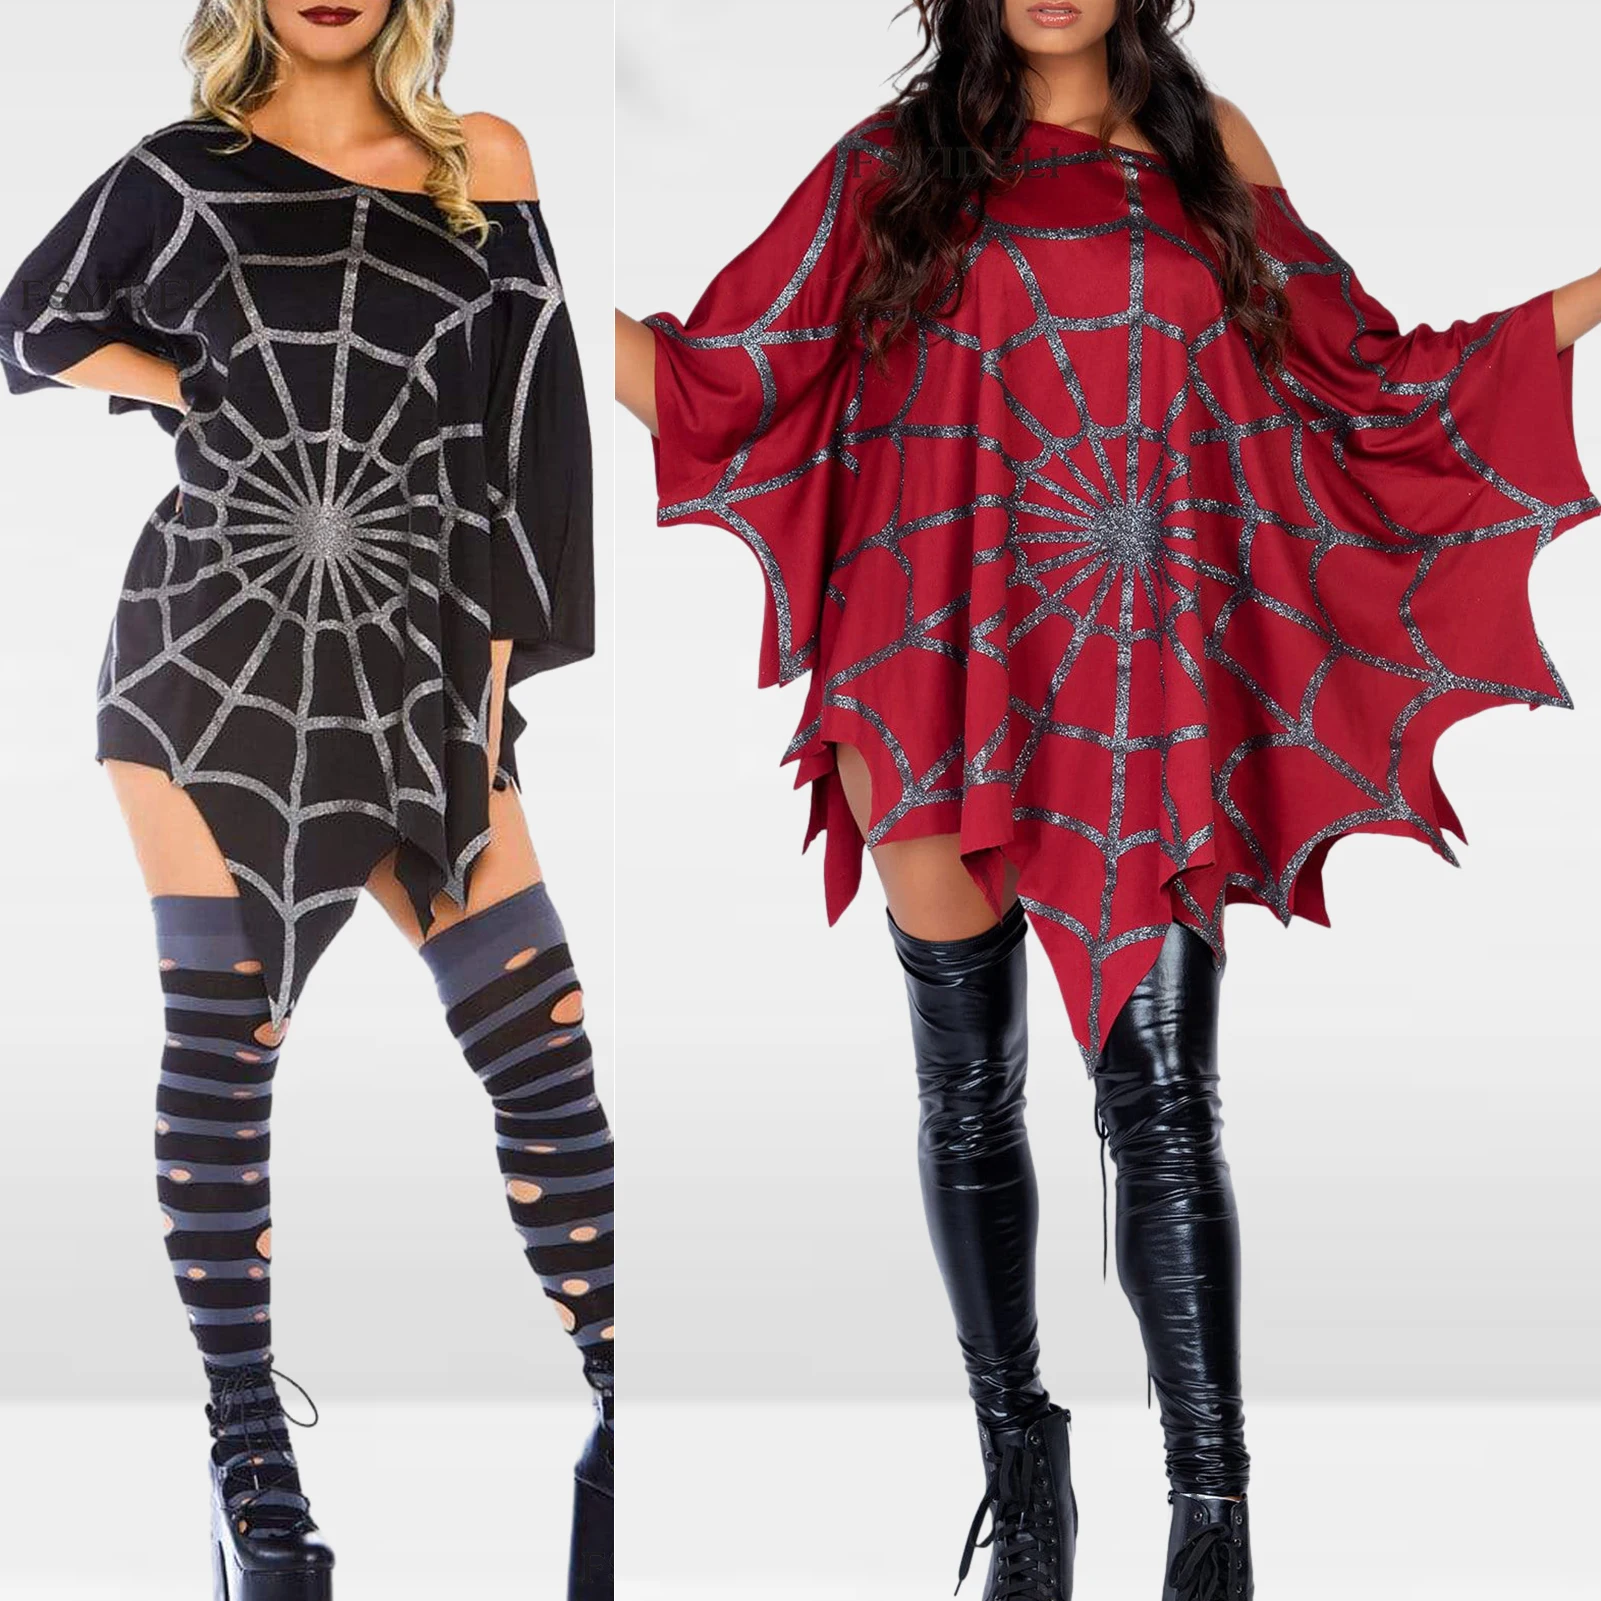 

Женский костюм-пончо в виде паука, блестящий накидка в виде паутины, новинка, пуловер свободного покроя, для Хэллоуина, косплея, клуба